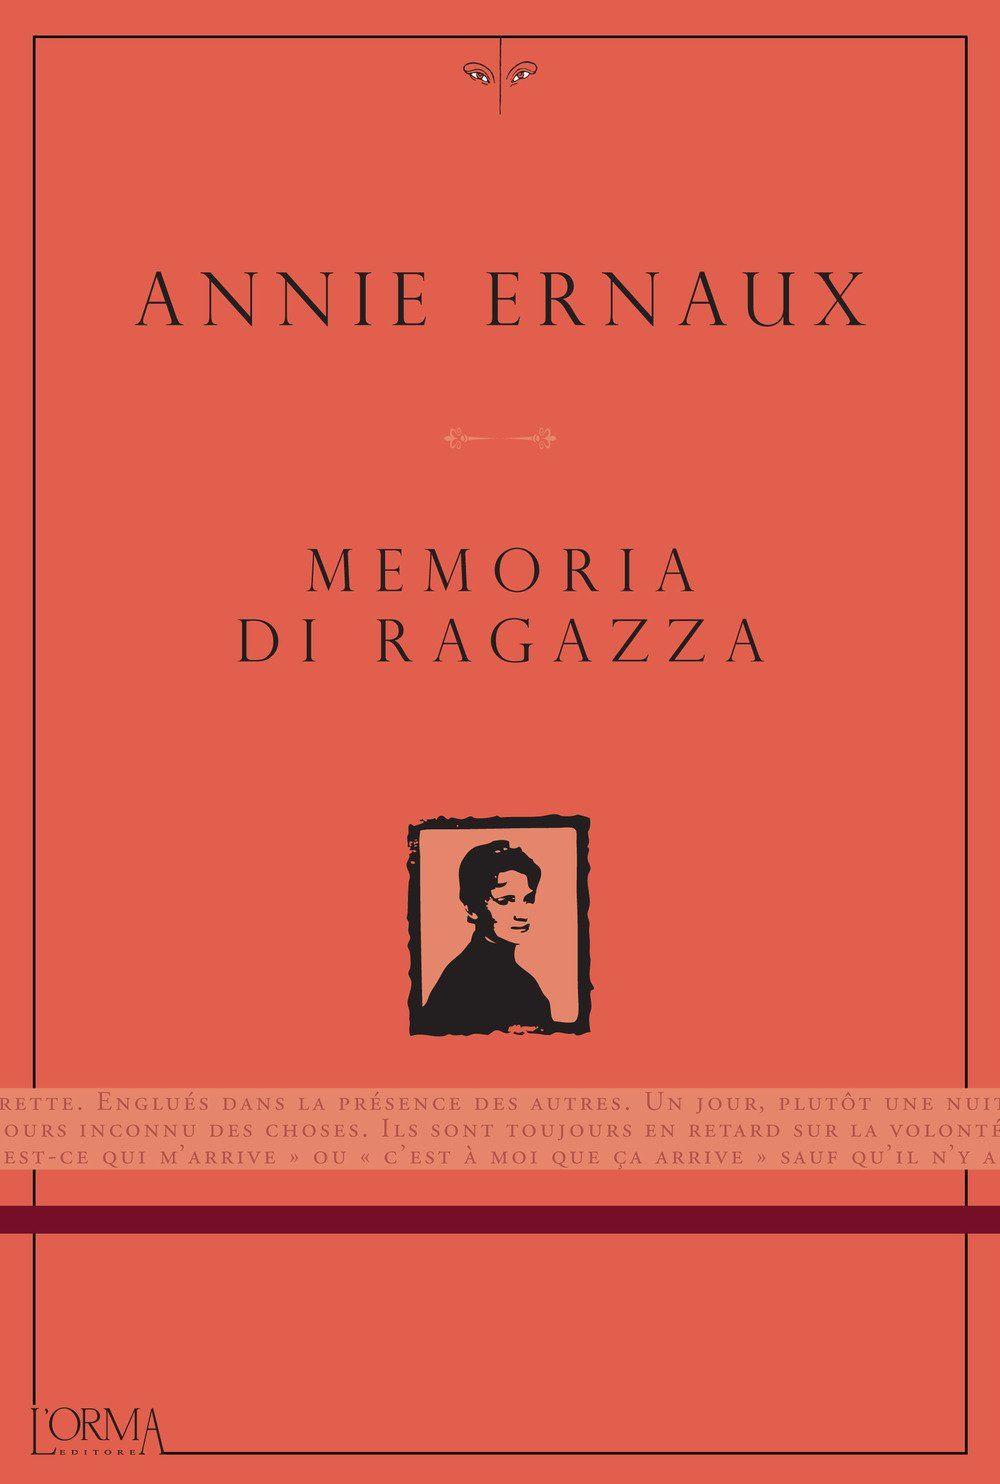 Libro "Memoria di ragazza" di Annie Ernaux